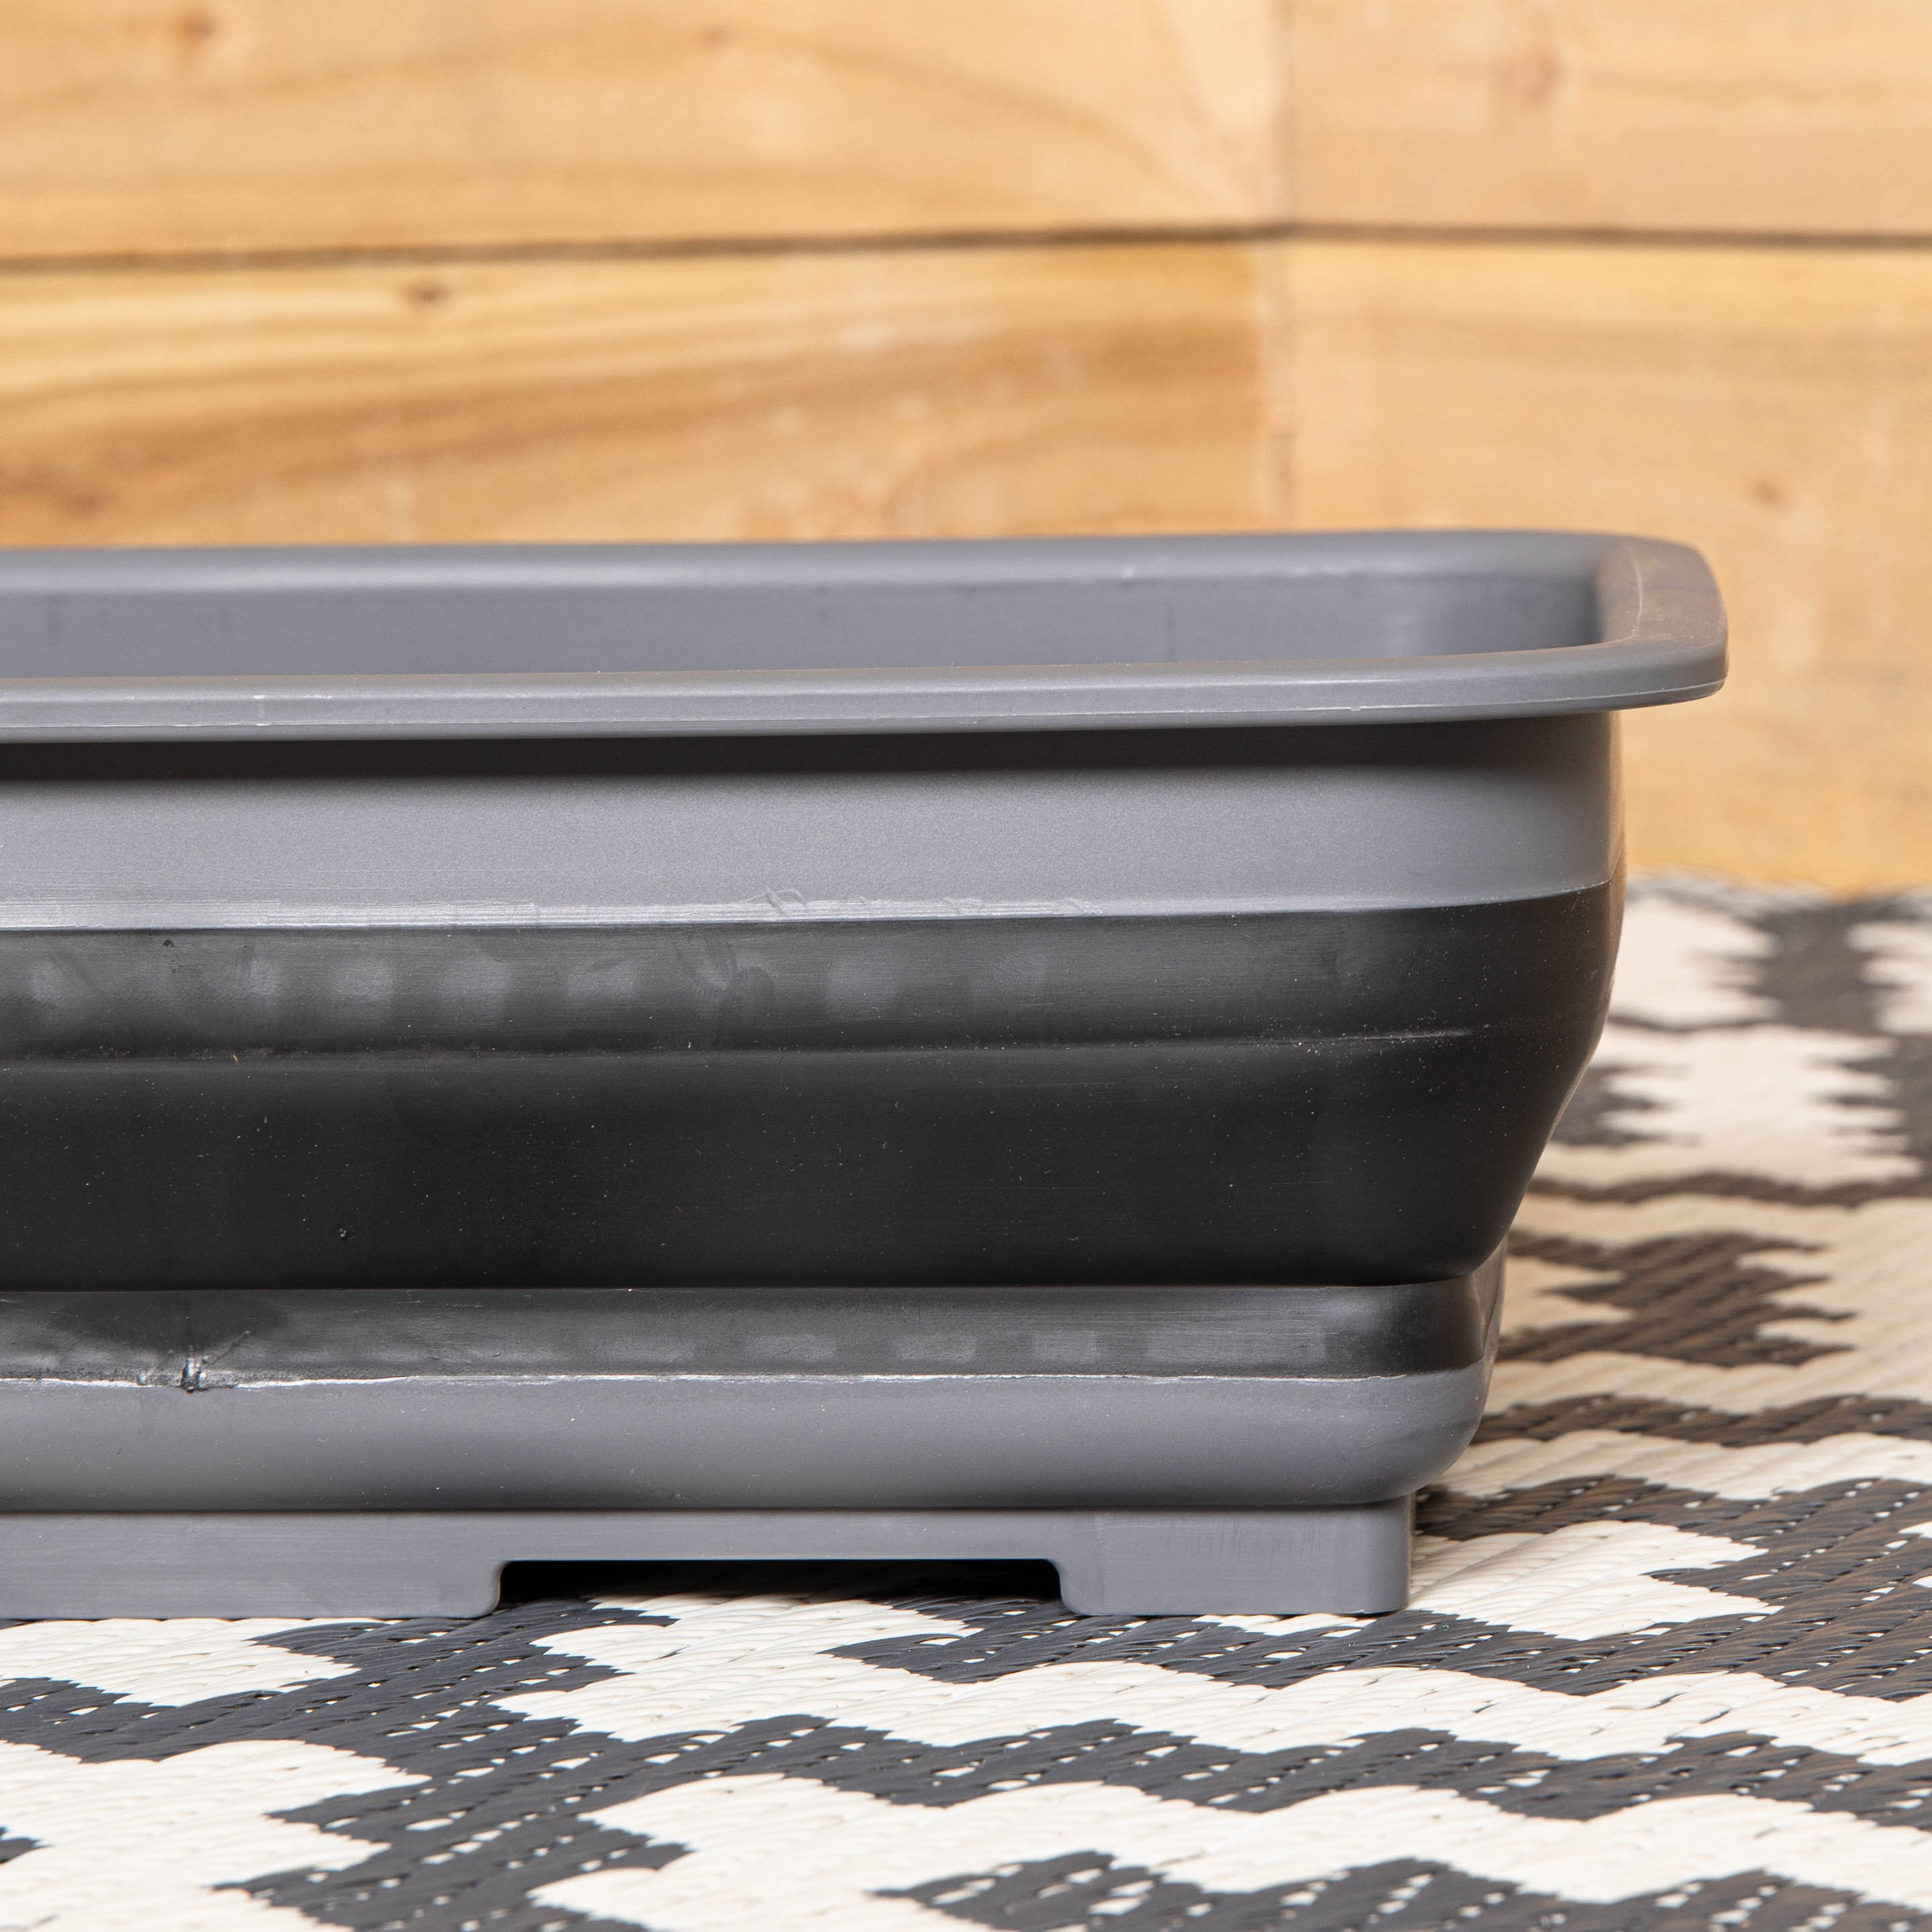 7L Black and Grey Collapsible Camping Dish Wash Basin Tub